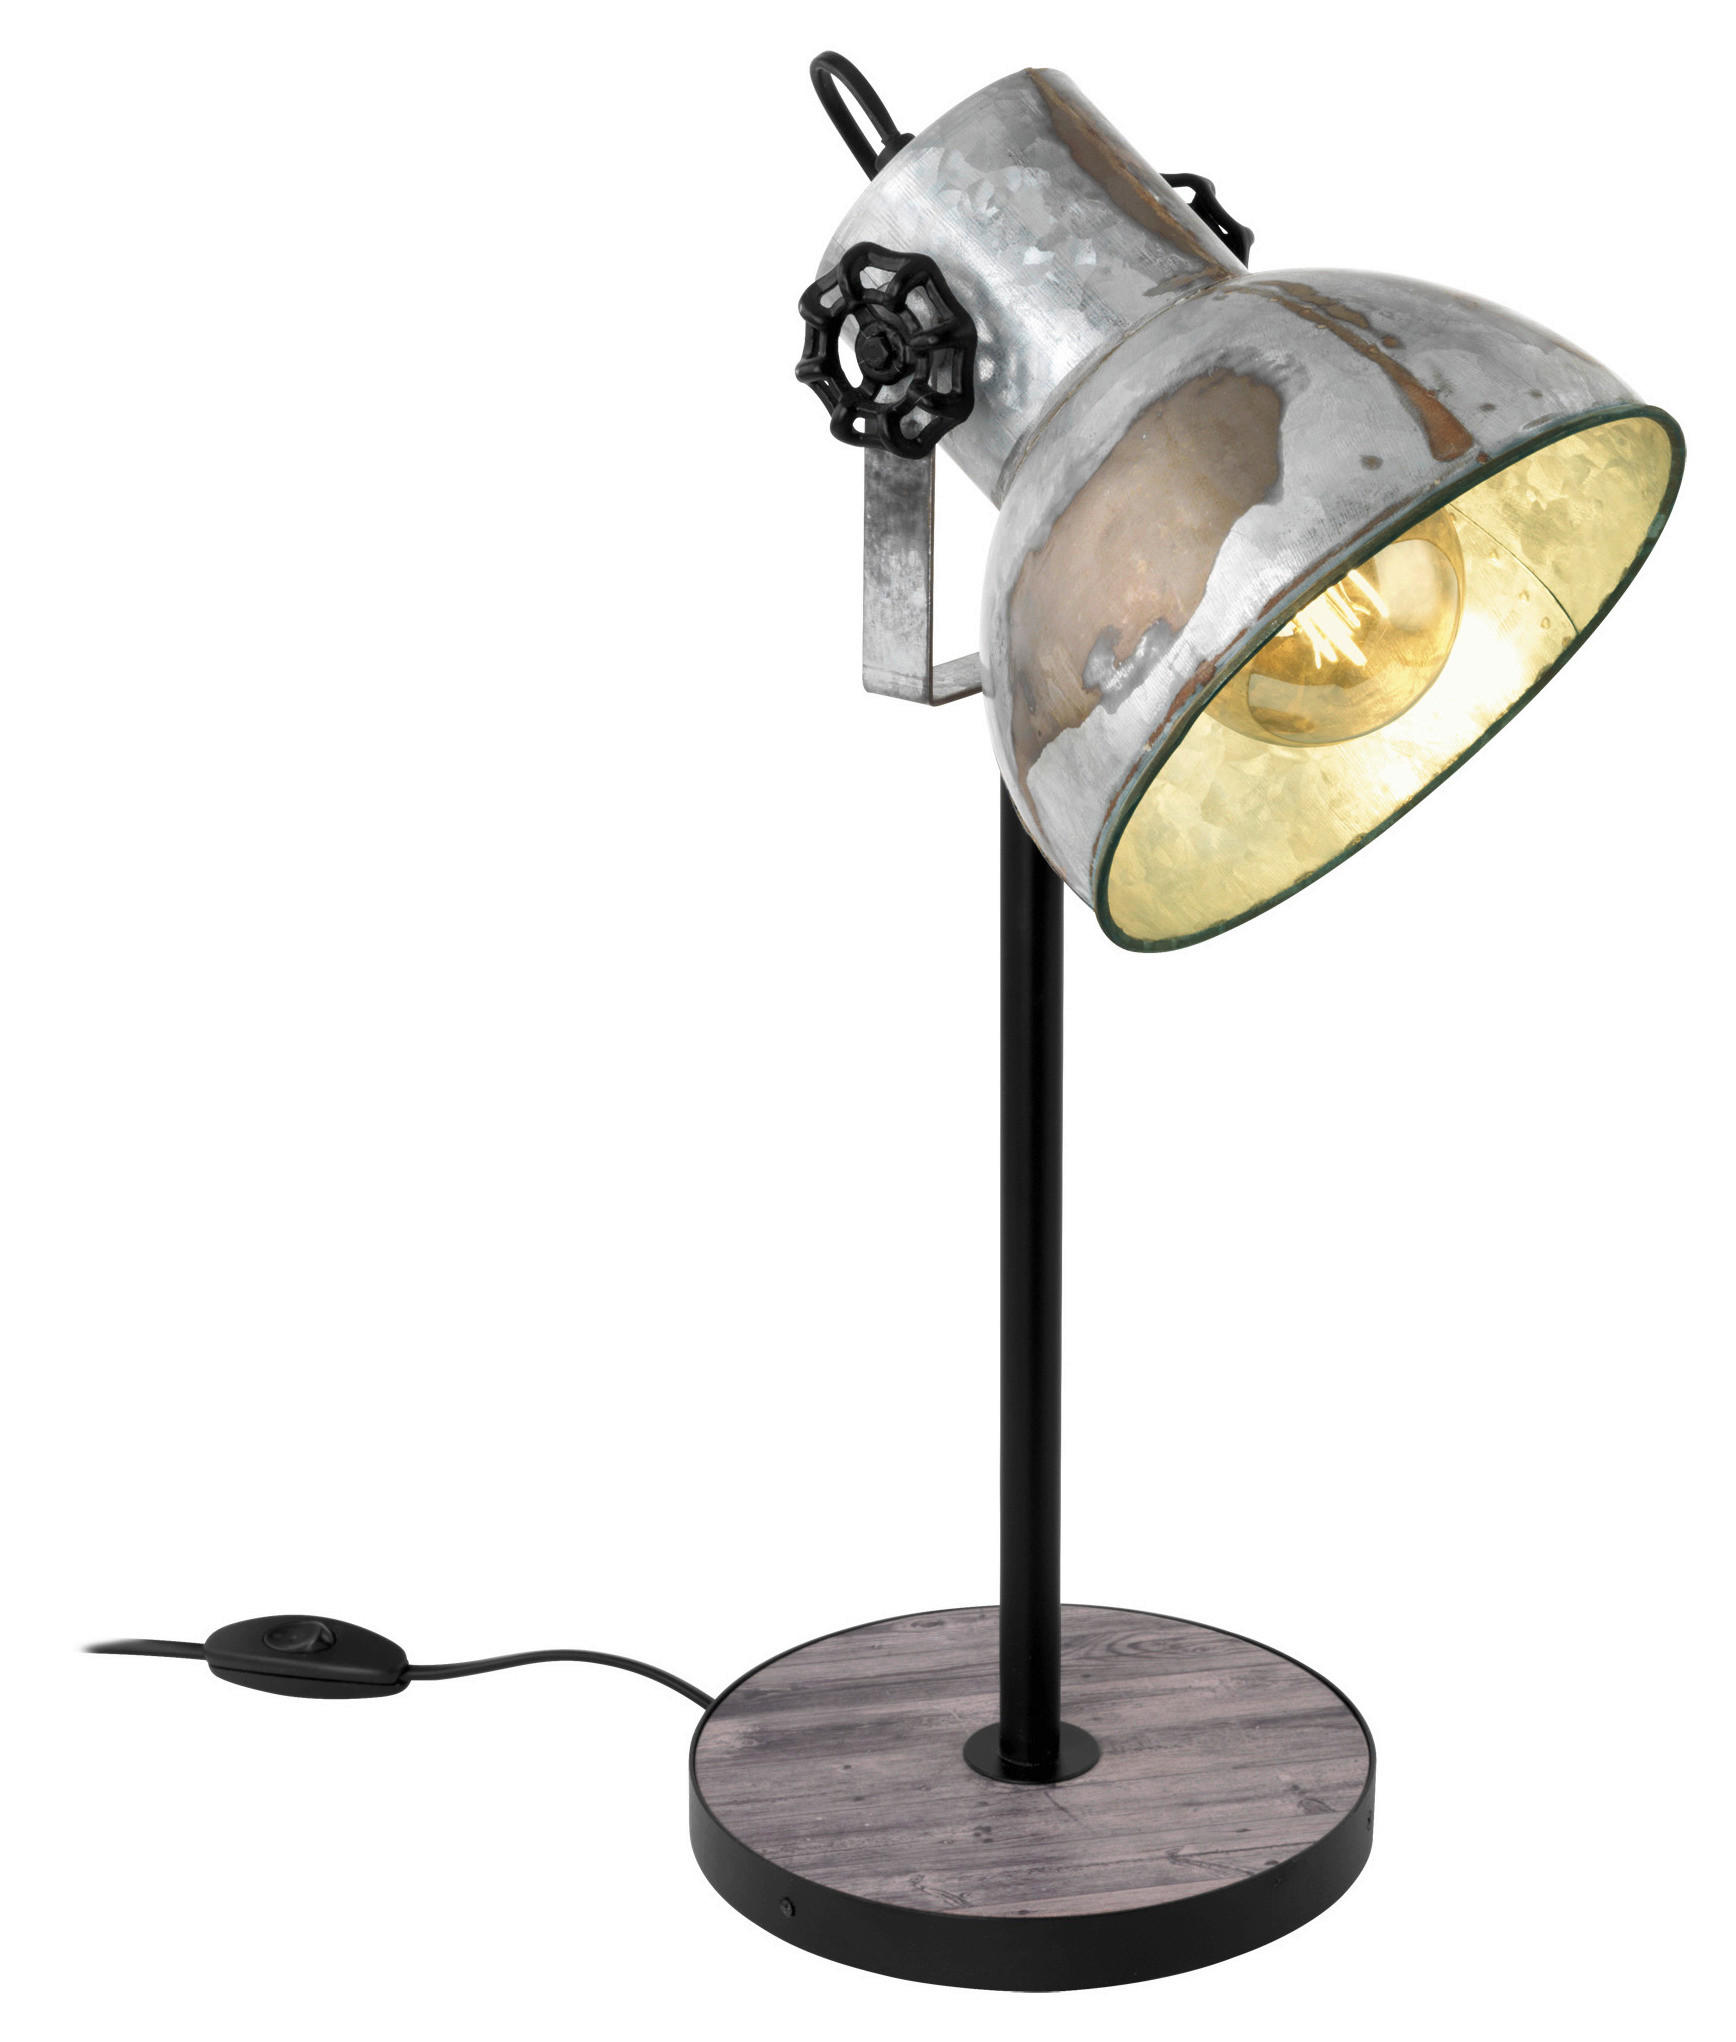 STOLNÁ LAMPA, E27, 17,5/40 cm  - hnedá/čierna, Trend, kov/drevo (17,5/40cm) - Eglo